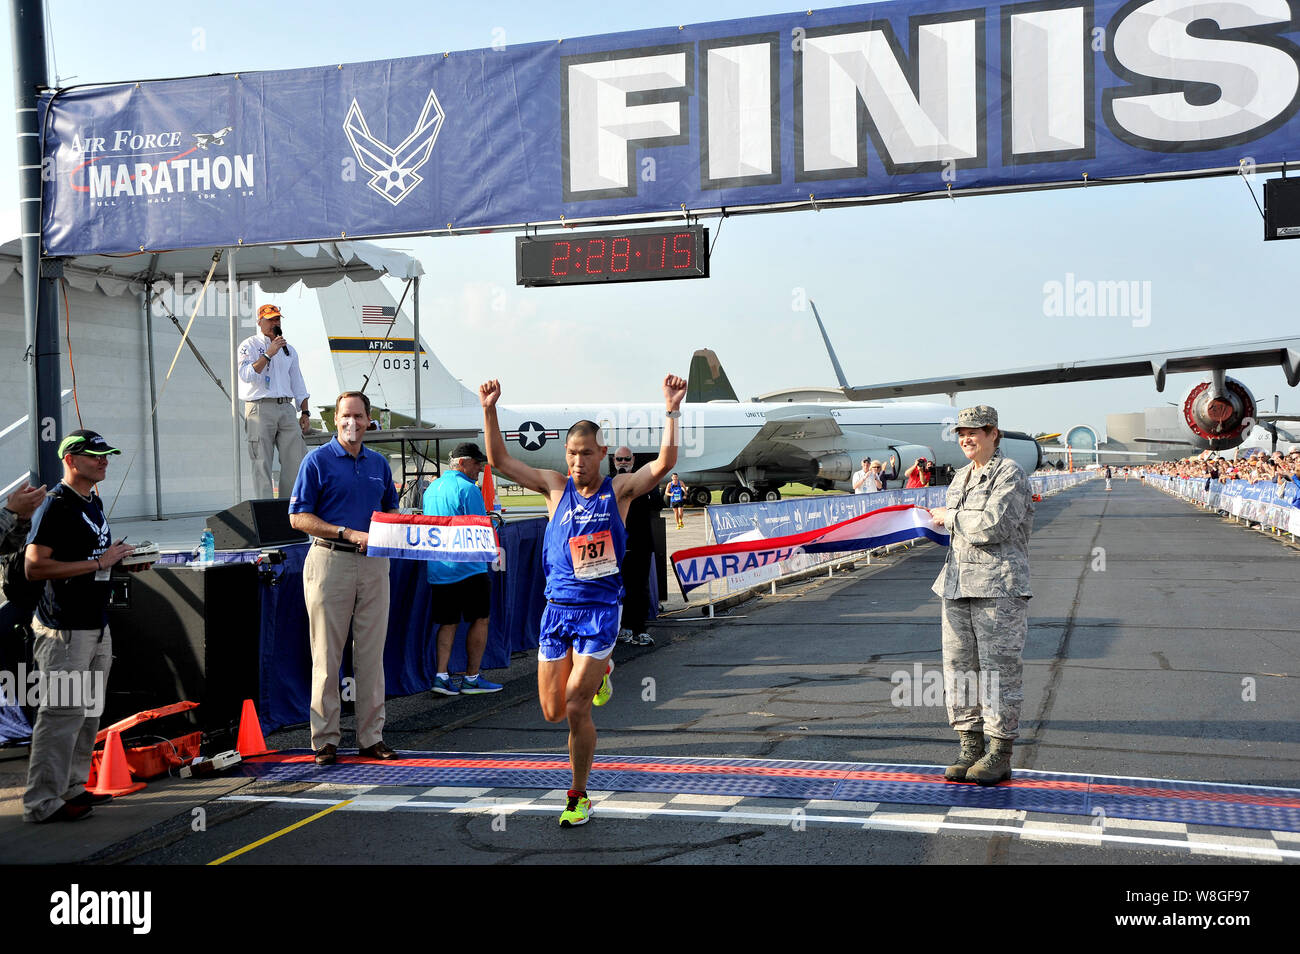 Man überquert die Ziellinie als 2014 volle Marathon Meister US Air Force's Marathon Männer an der Wright-Patterson Air Force Base, Ohio, Sept. 20. Stockfoto